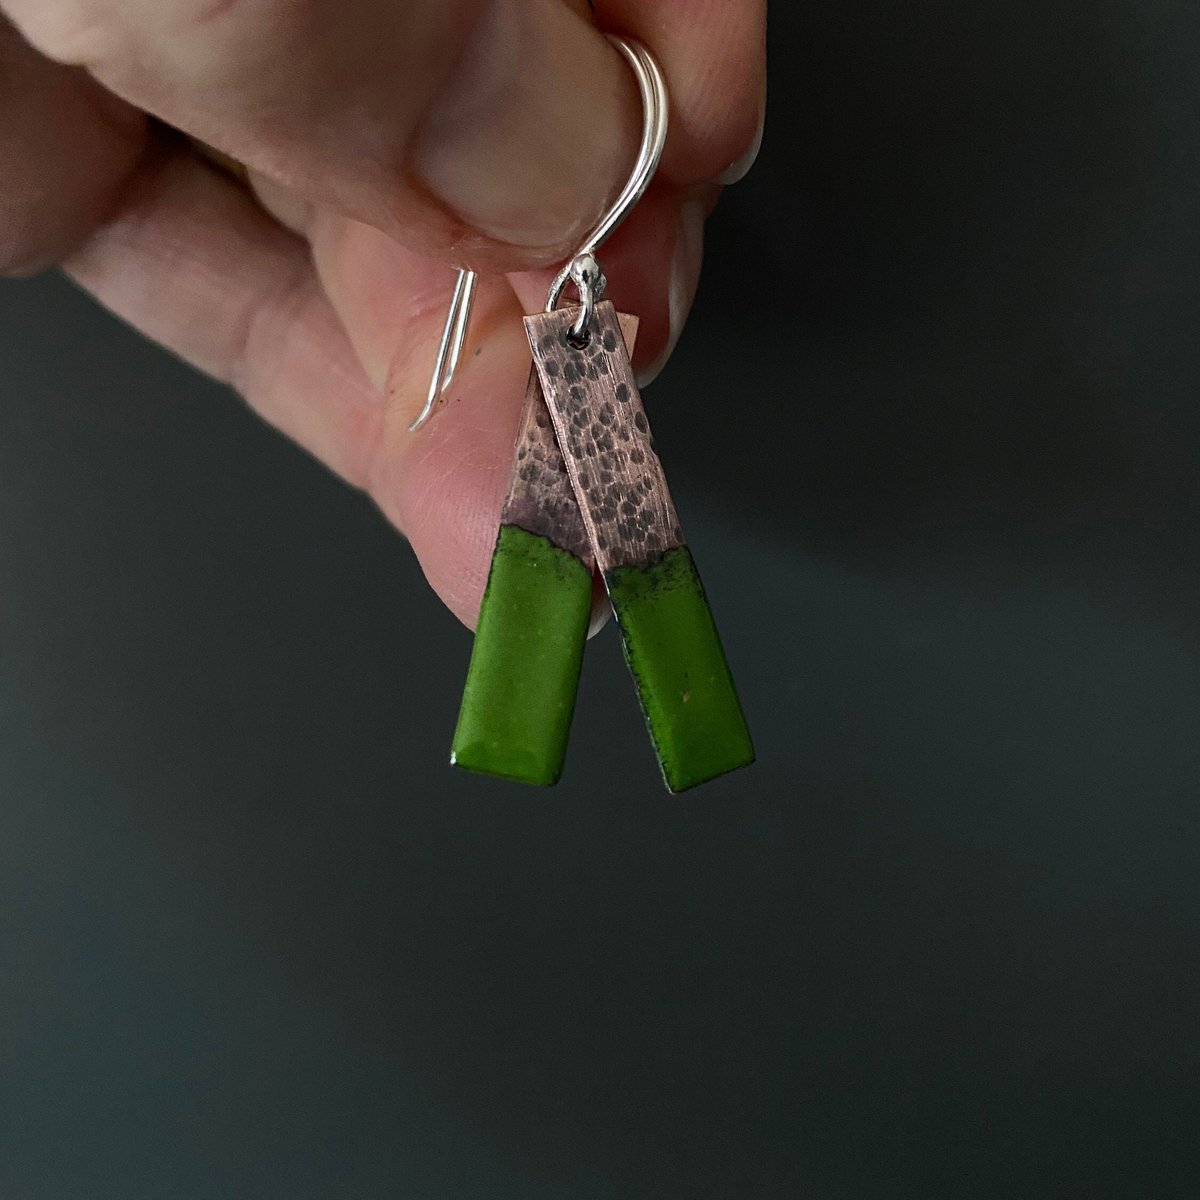 Green copper enamel rectangle earrings, Bar Earrings tuppu.net/ba3f9b95 #Etsy #MaisyPlum #UKCraftersHour #ShopIndie #MHHSBD #MyNewTag #GeometricDangle